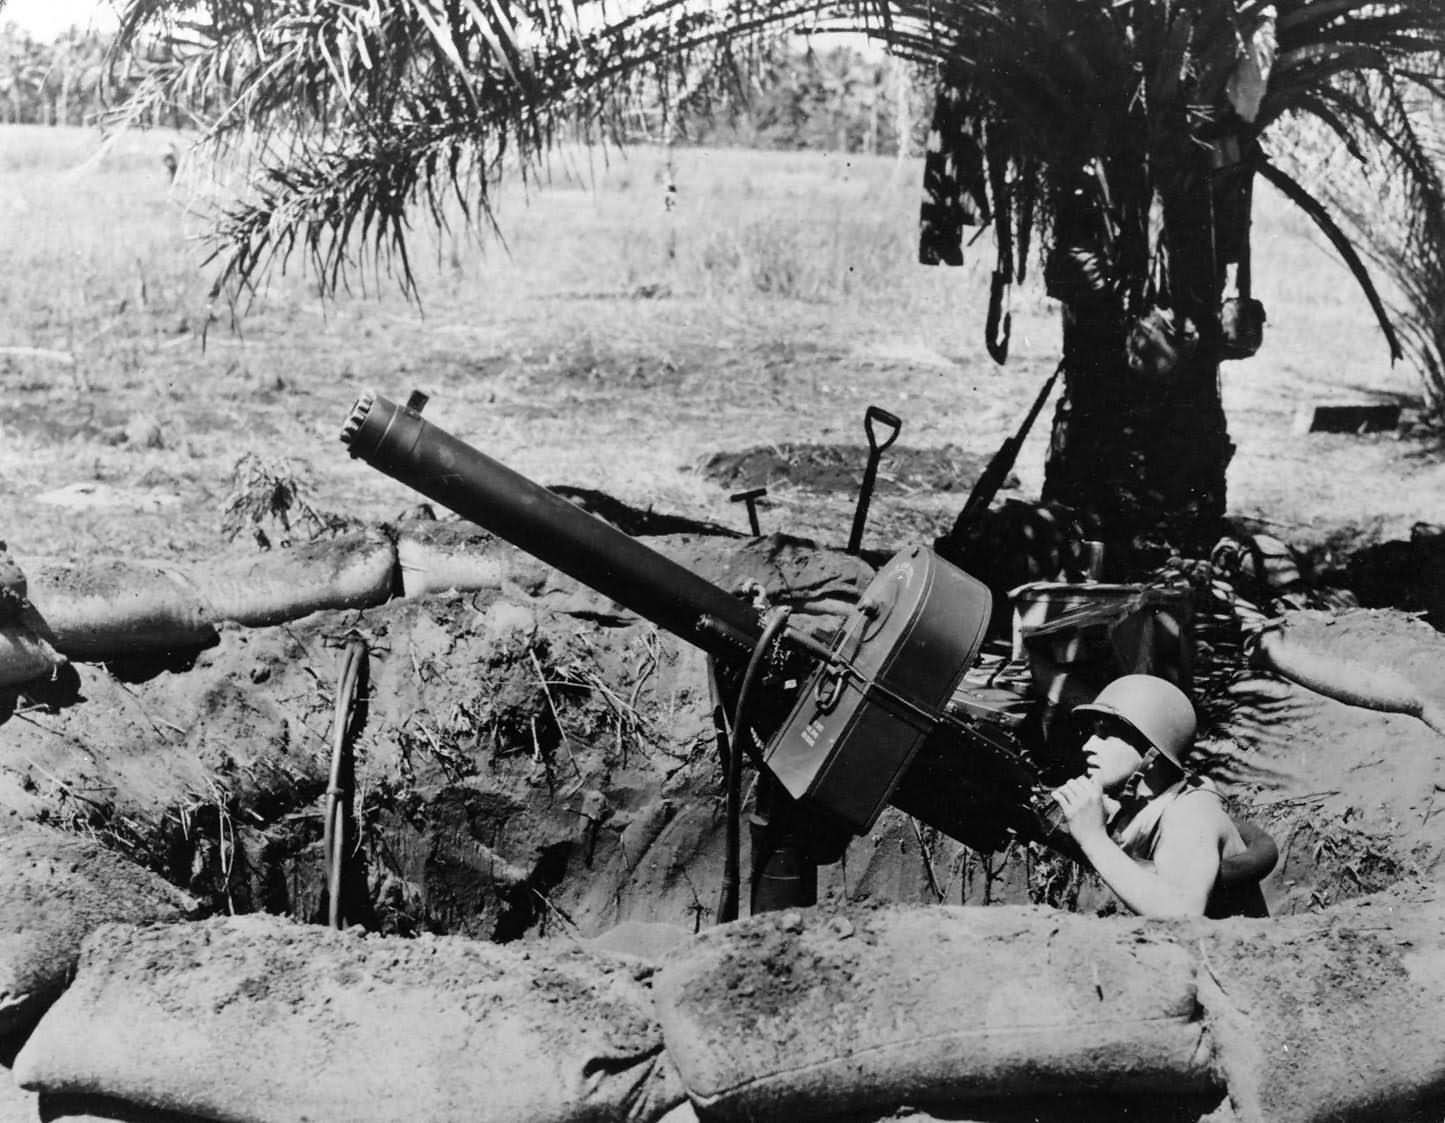 Guadalcanal_Marine_at_50_cal_anti_aircraft_mg_1942.jpg